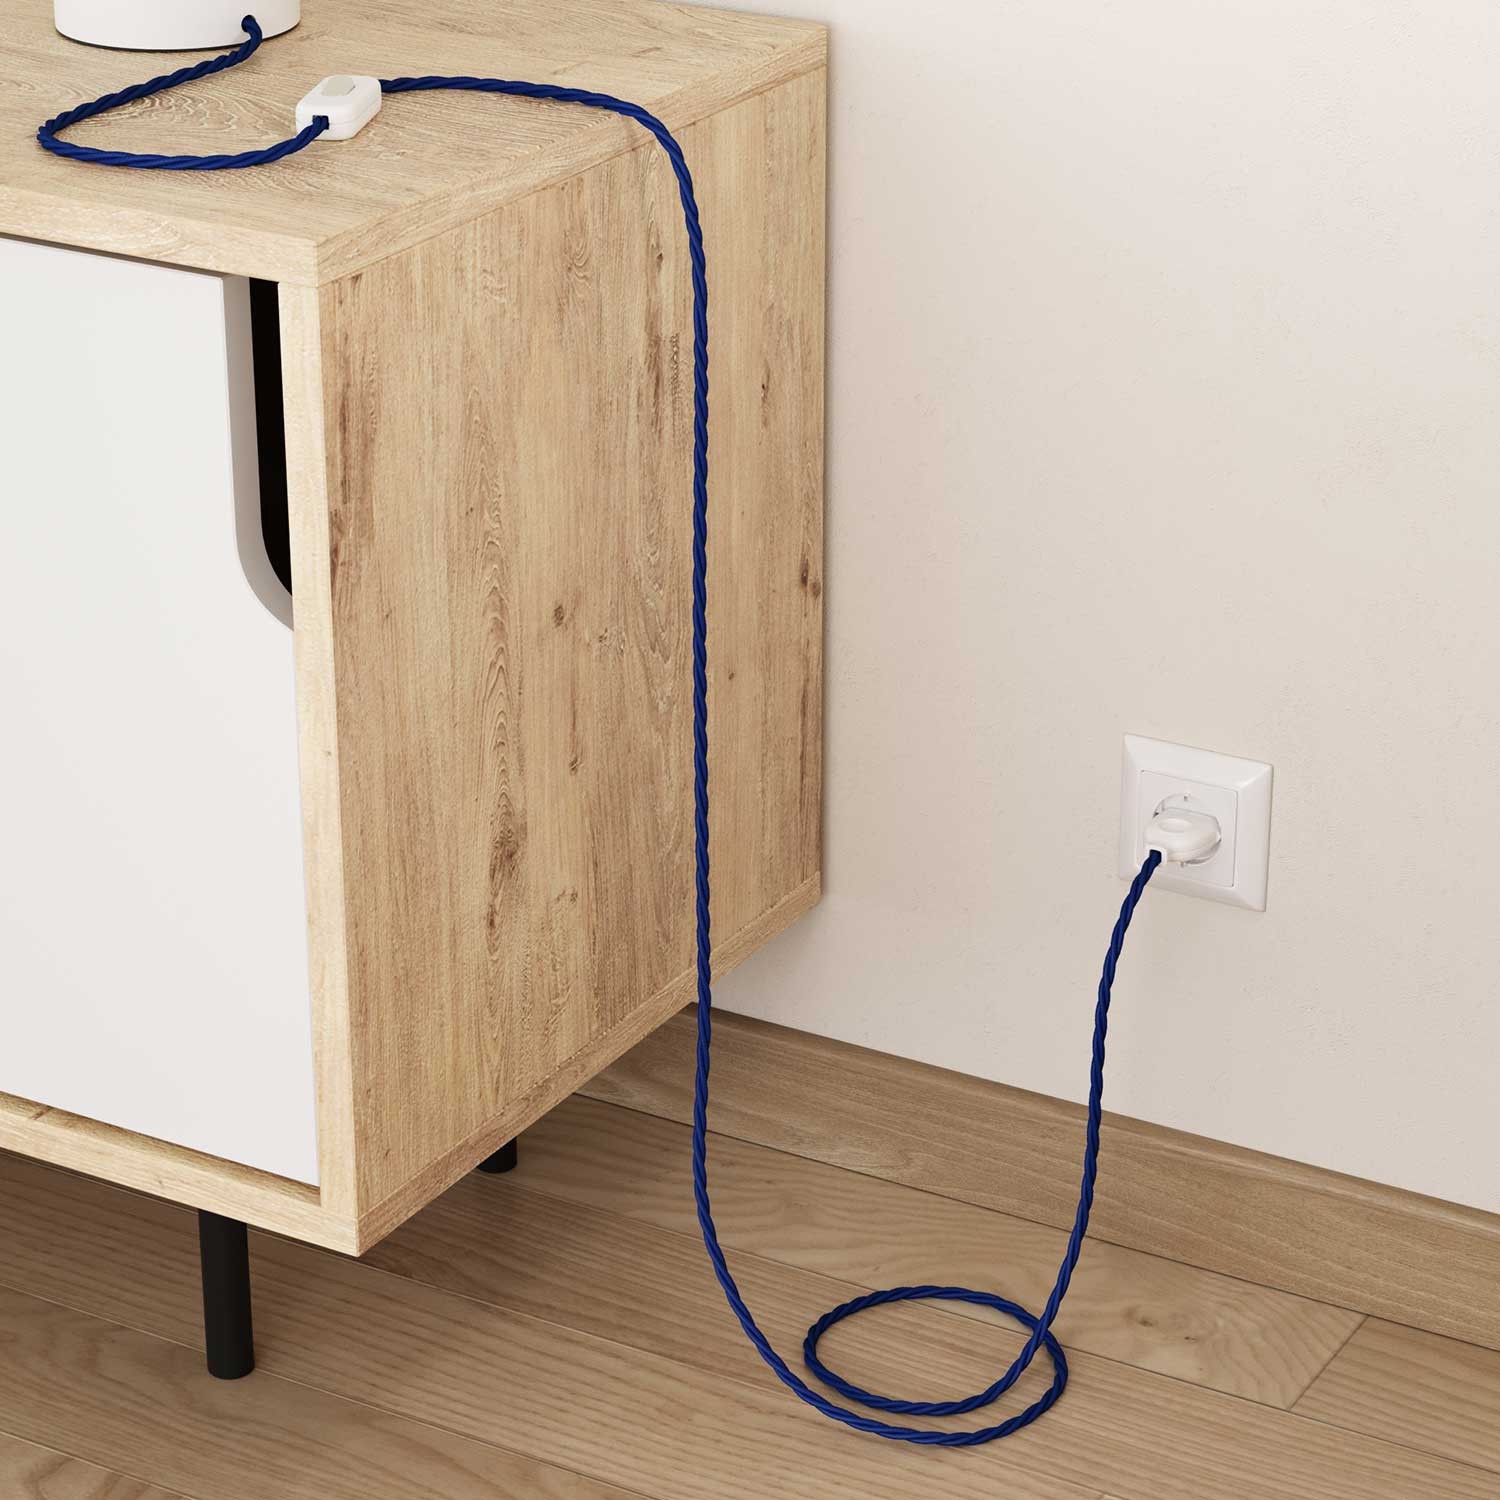 Elektrisches Kabel geflochten überzogen mit Textil-Seideneffekt Einfarbig Blau TM12